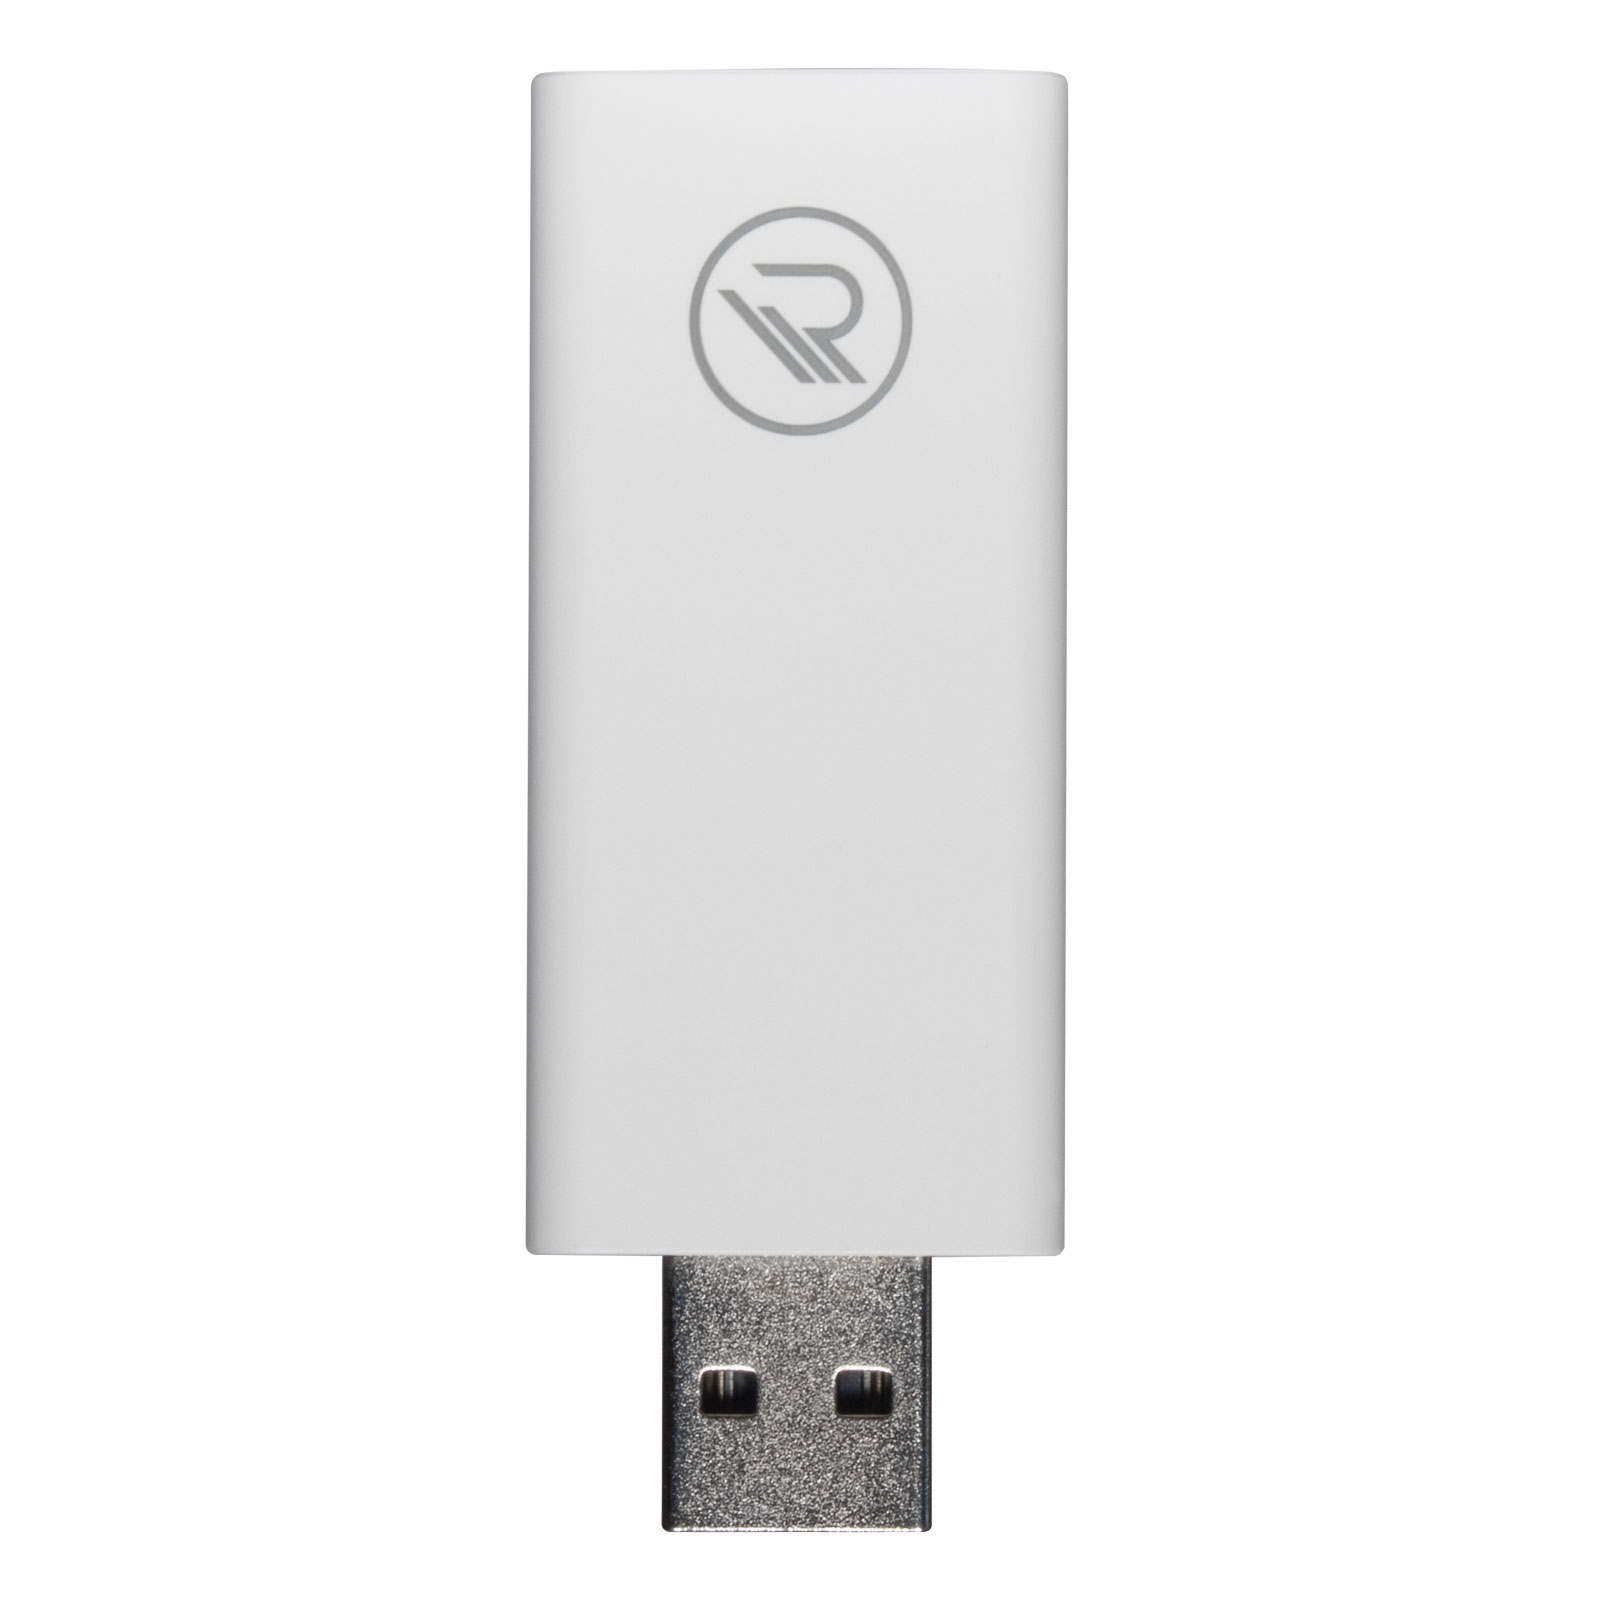 Rademacher addZ USB disk ZigBee gateway